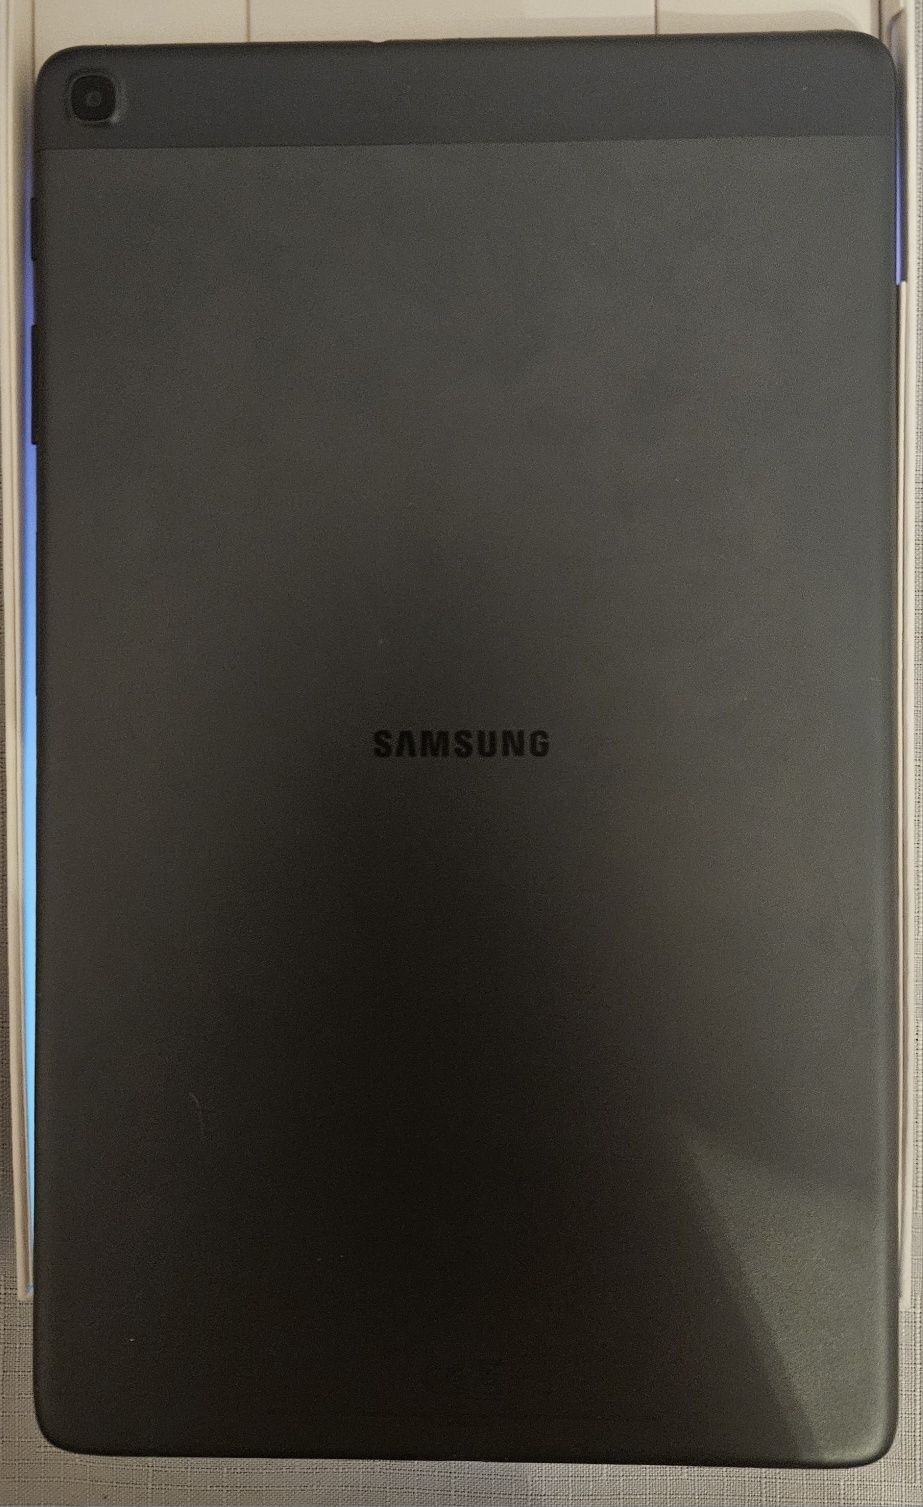 Samsung galaxy tab a 10.1 cala